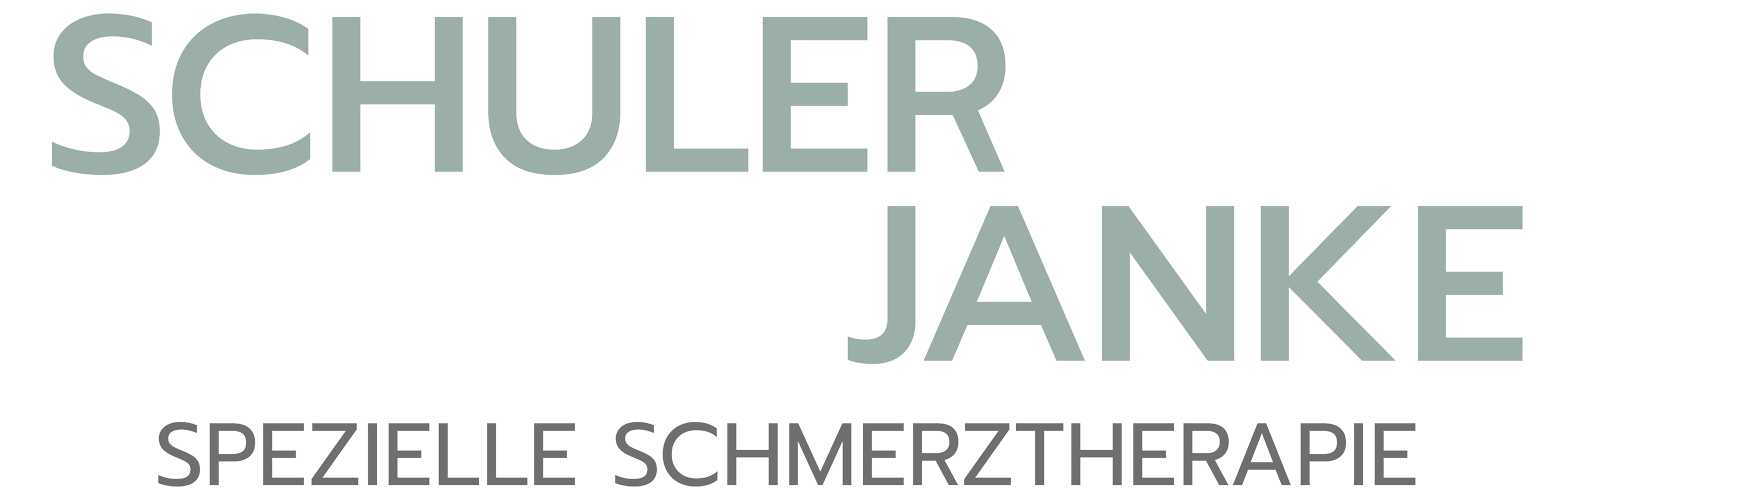 Schuler Janke Spezielle Schmerztherapie Mannheim Logo cropped